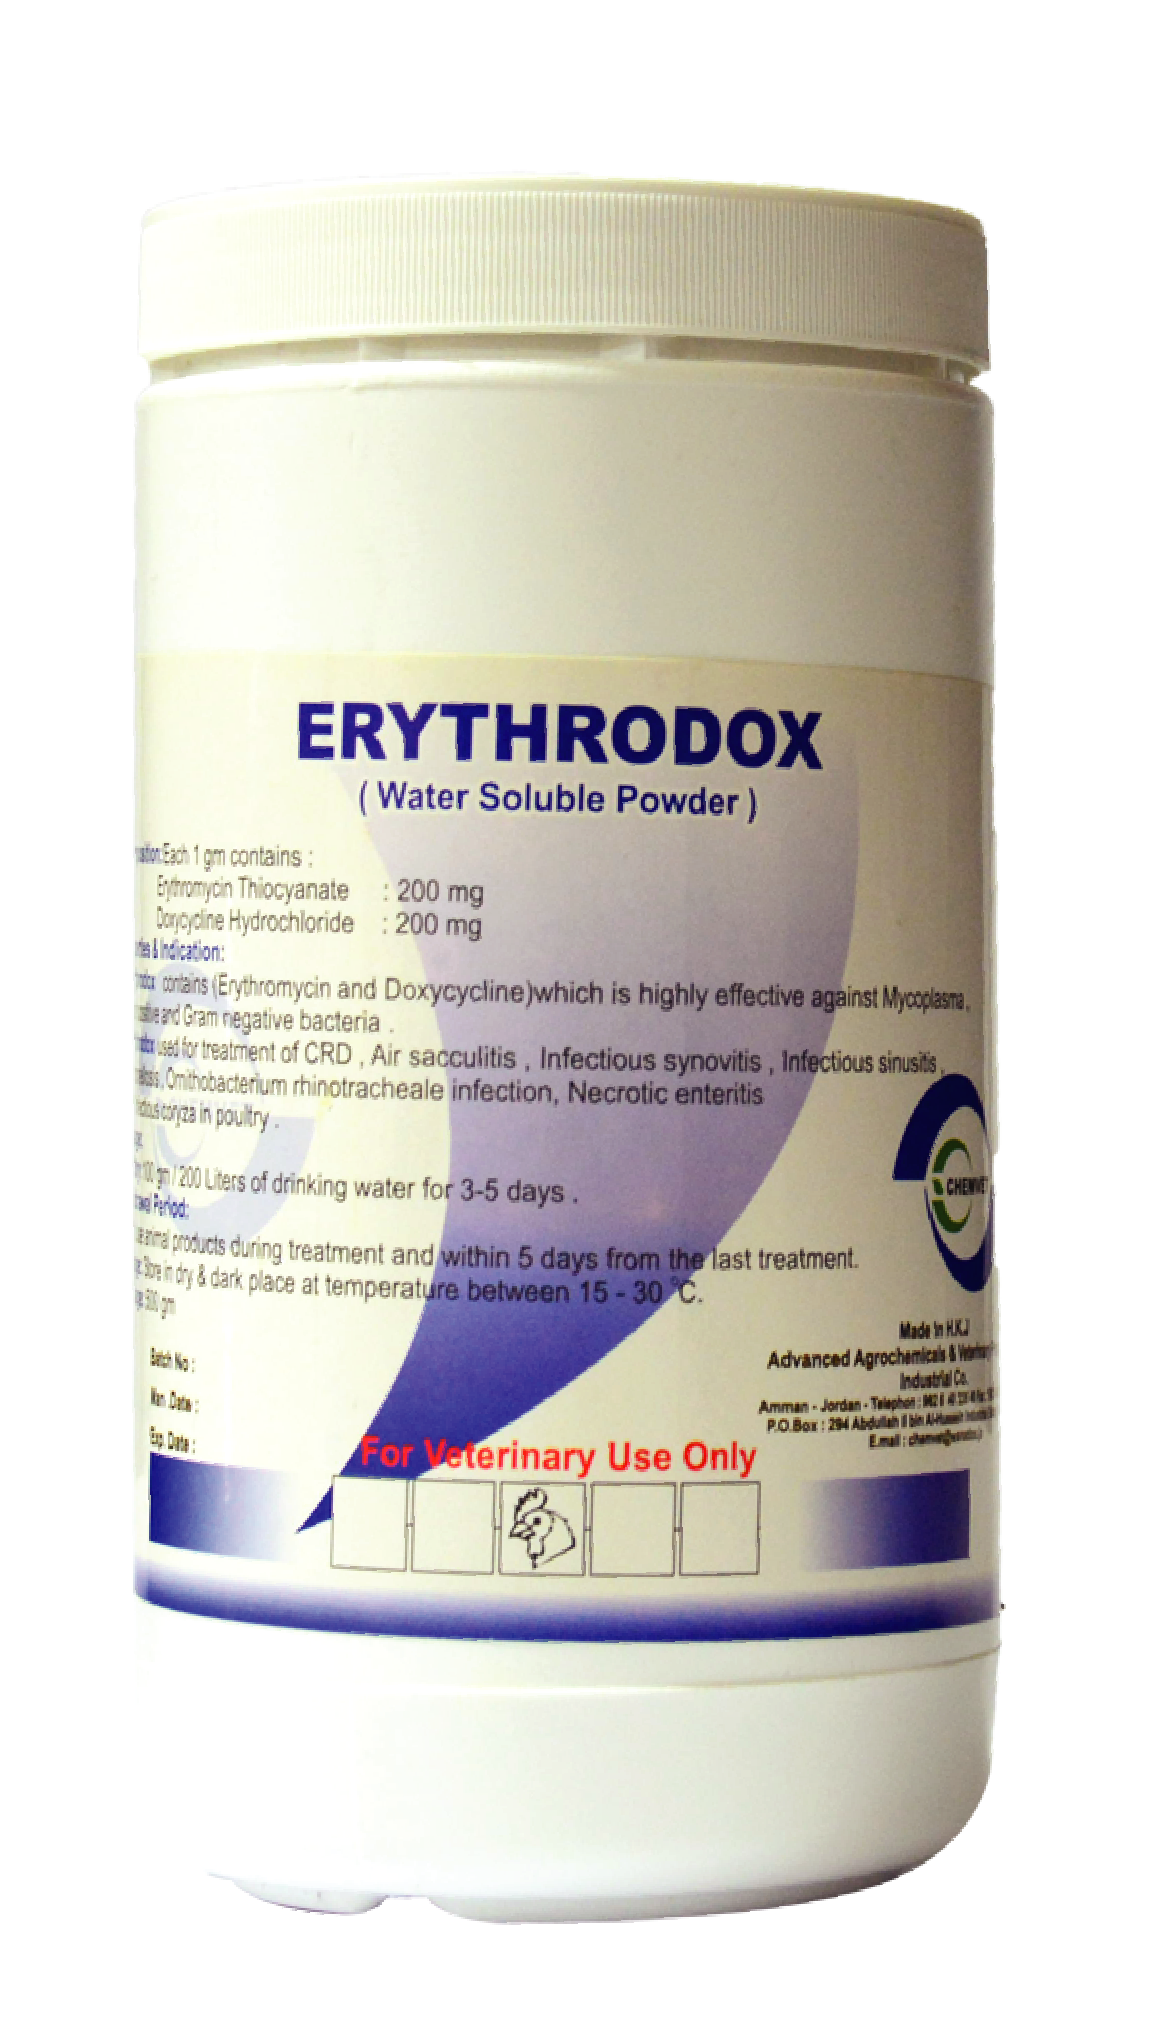 ERYTHRODOX